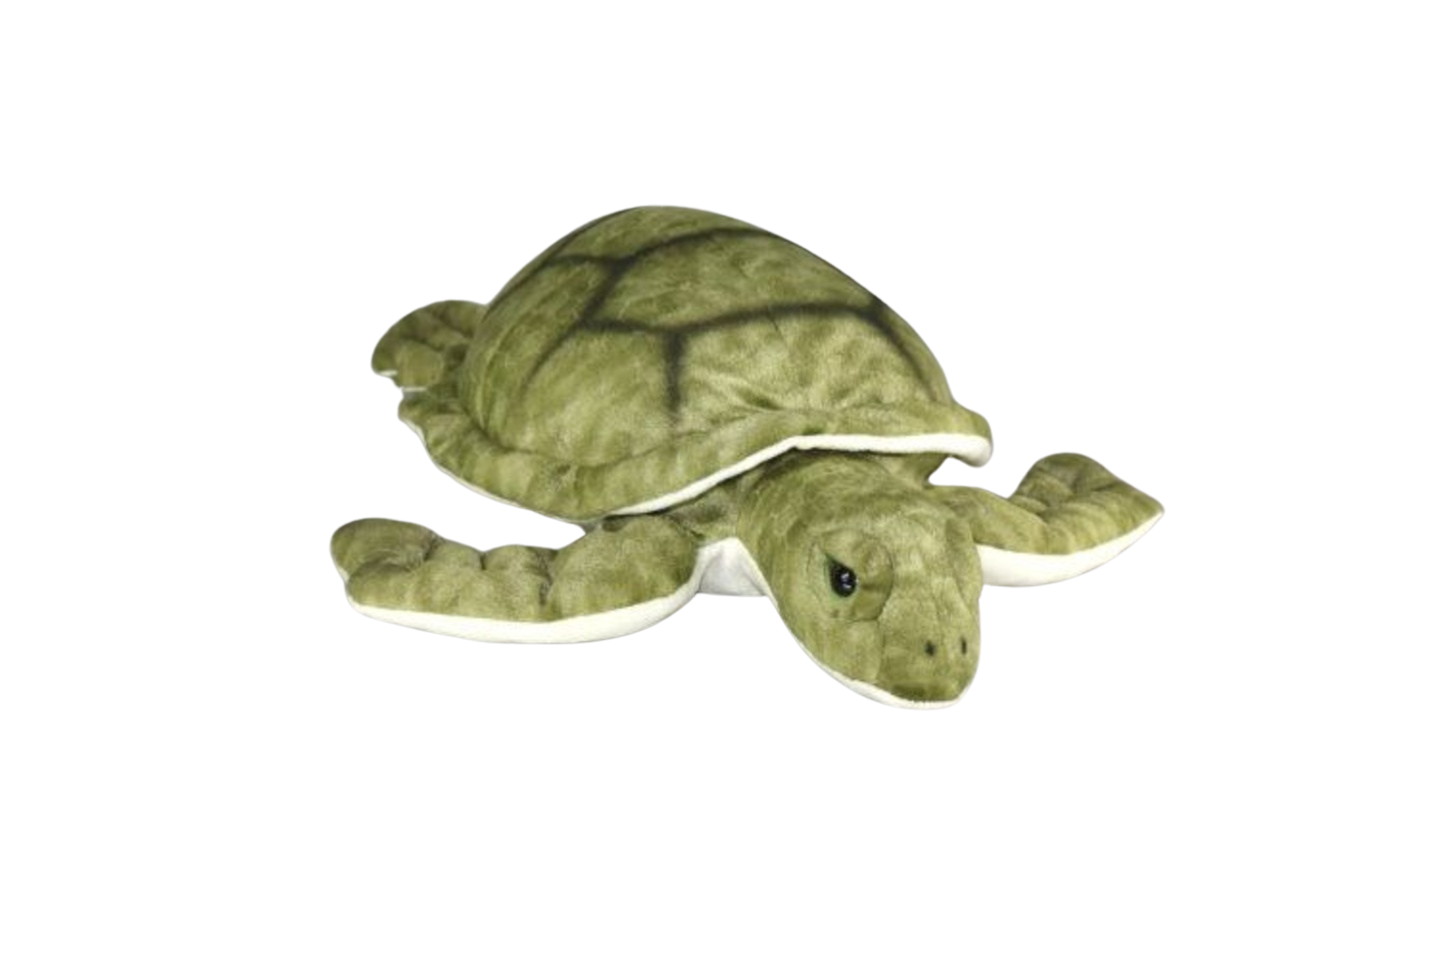 Kilpikonna Pehmolelu 30cm